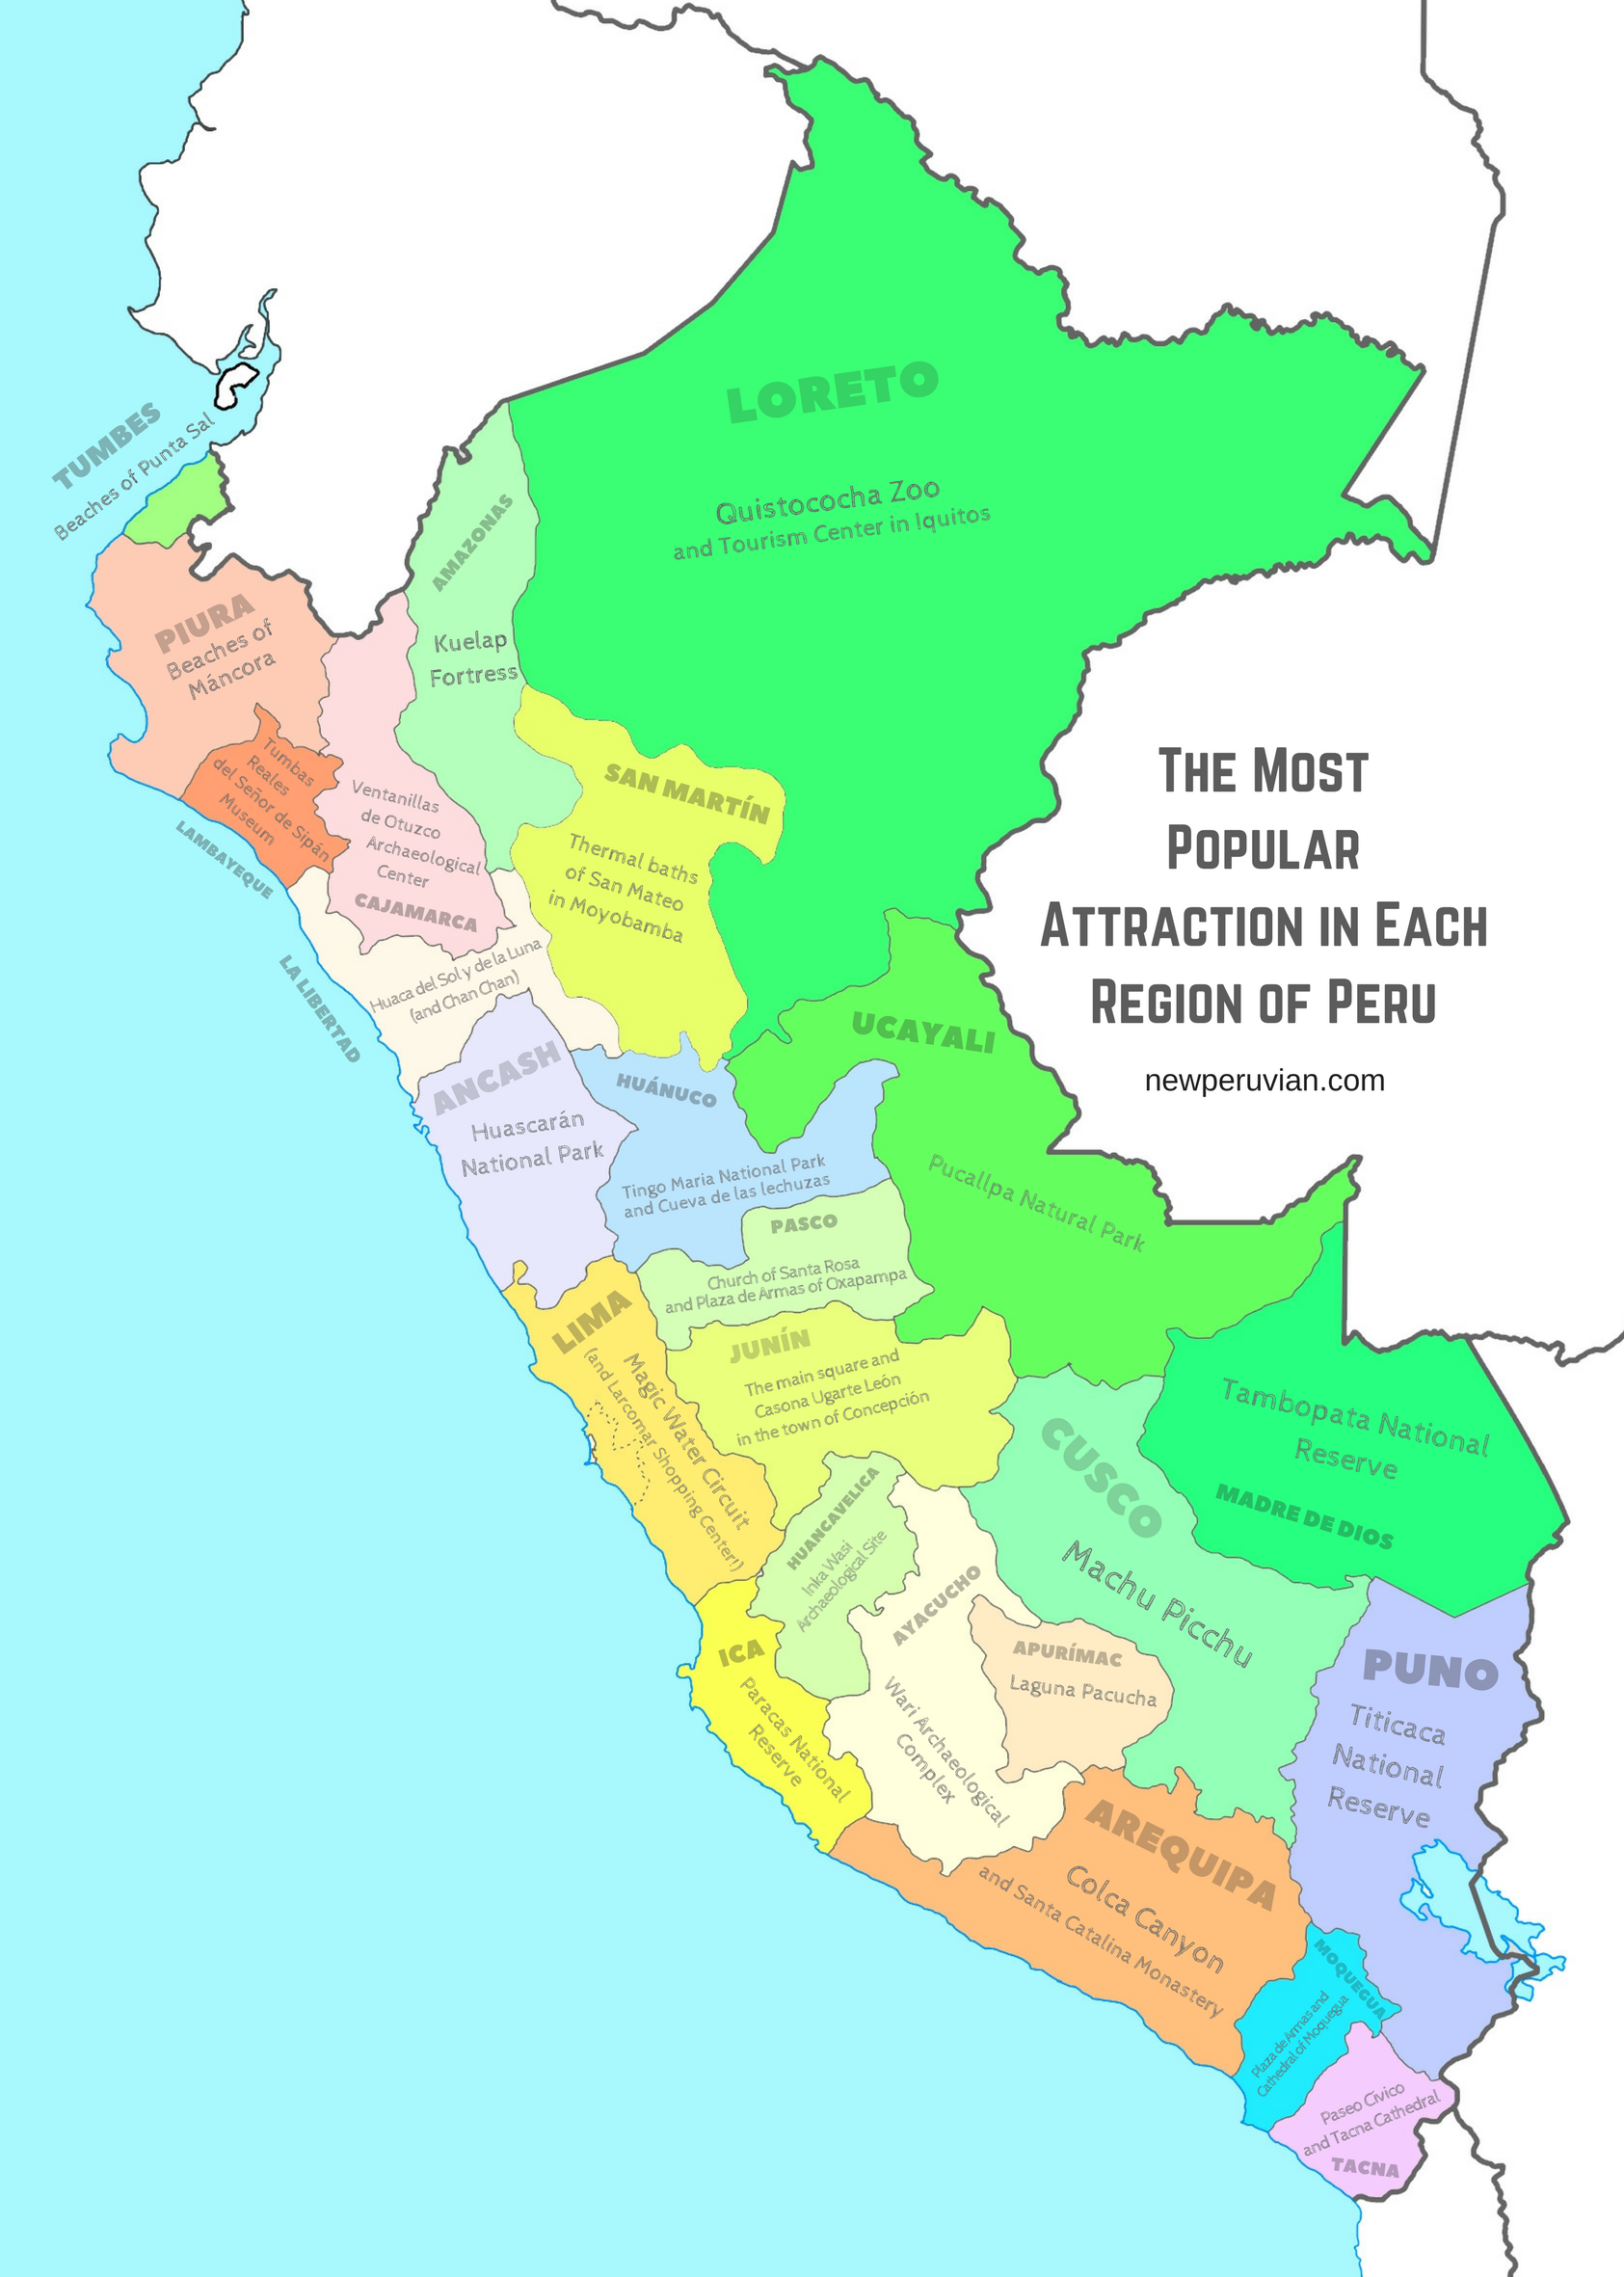 tourism statistic in peru